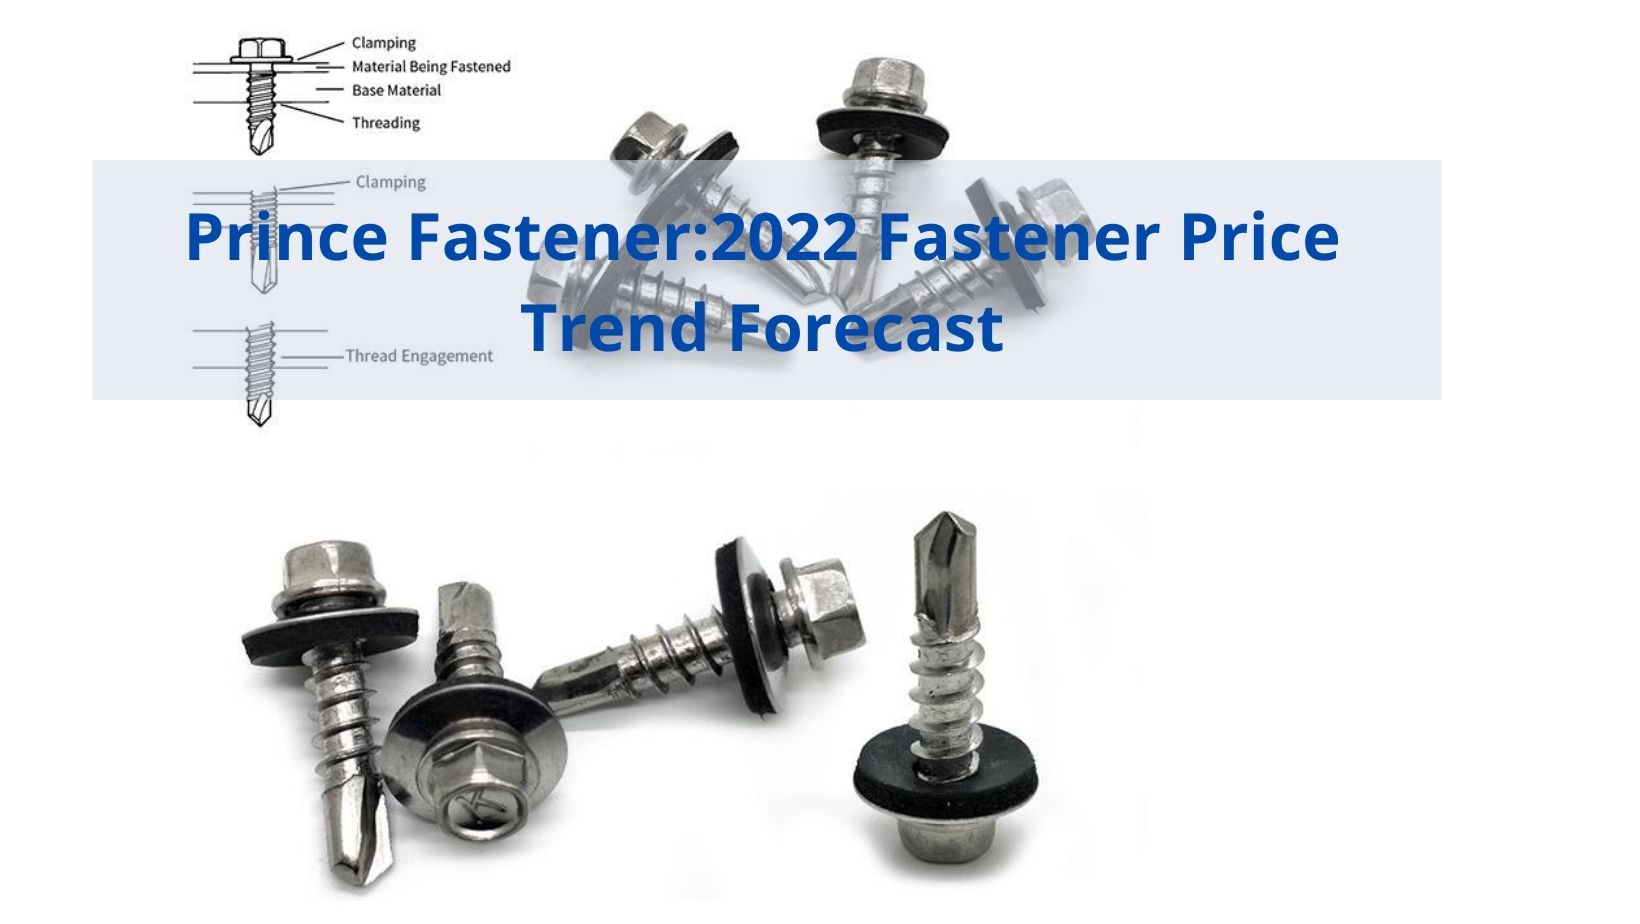 Prince Fastener 2022 Previsão de tendência de preço do Fastener